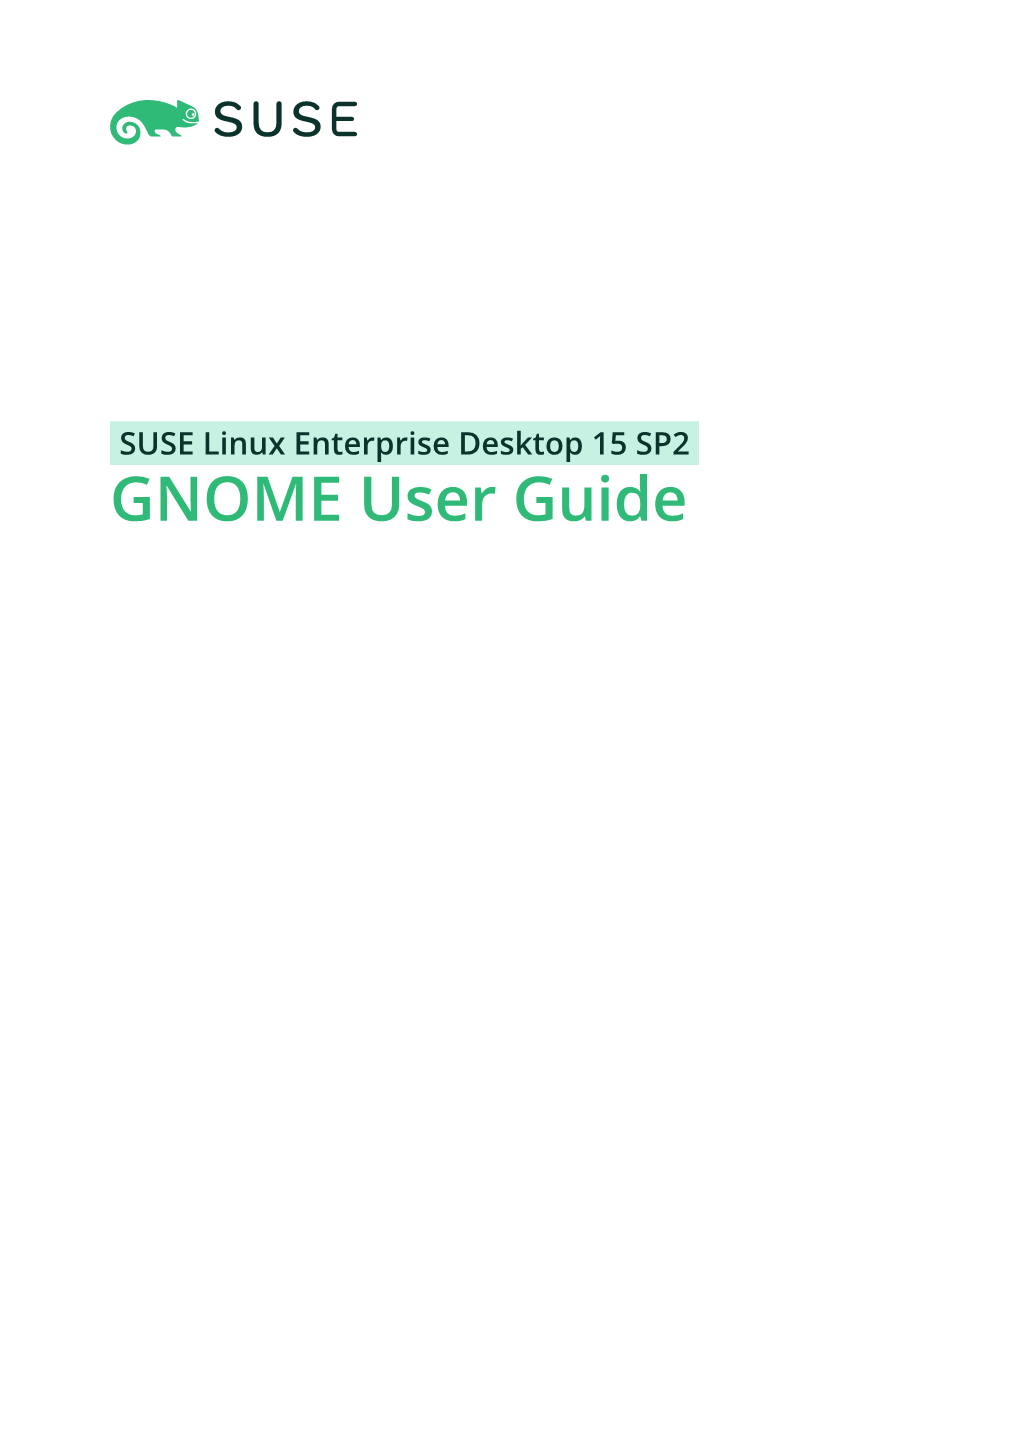 GNOME User Guide GNOME User Guide SUSE Linux Enterprise Desktop 15 SP2